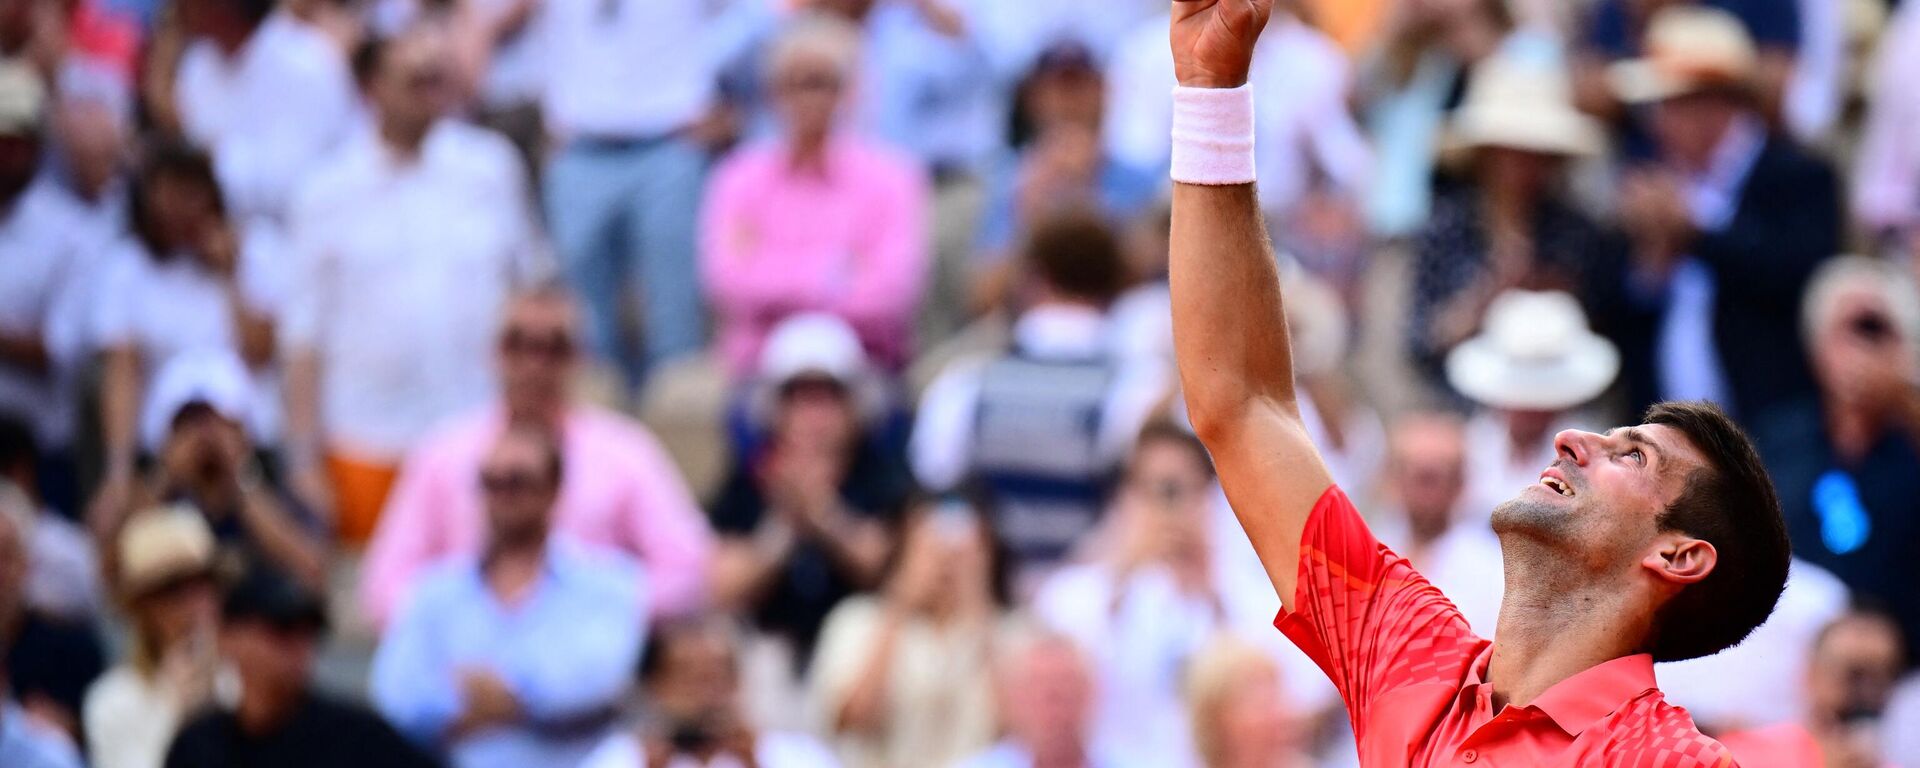 Fransa Açık Tenis Turnuvası tek erkekler finalinde Norveçli Casper Ruud'u 3-0 yenen Sırp raket Novak Djokovic şampiyon oldu. Fransa Açık'ta 3. zaferini yaşayan Sırp raket hem dünya 1 numarasına yükseldi hem de 23. Grand Slam şampiyonluğuyla Federer ve Nadal'ı geride bıraktı. - Sputnik Türkiye, 1920, 11.06.2023